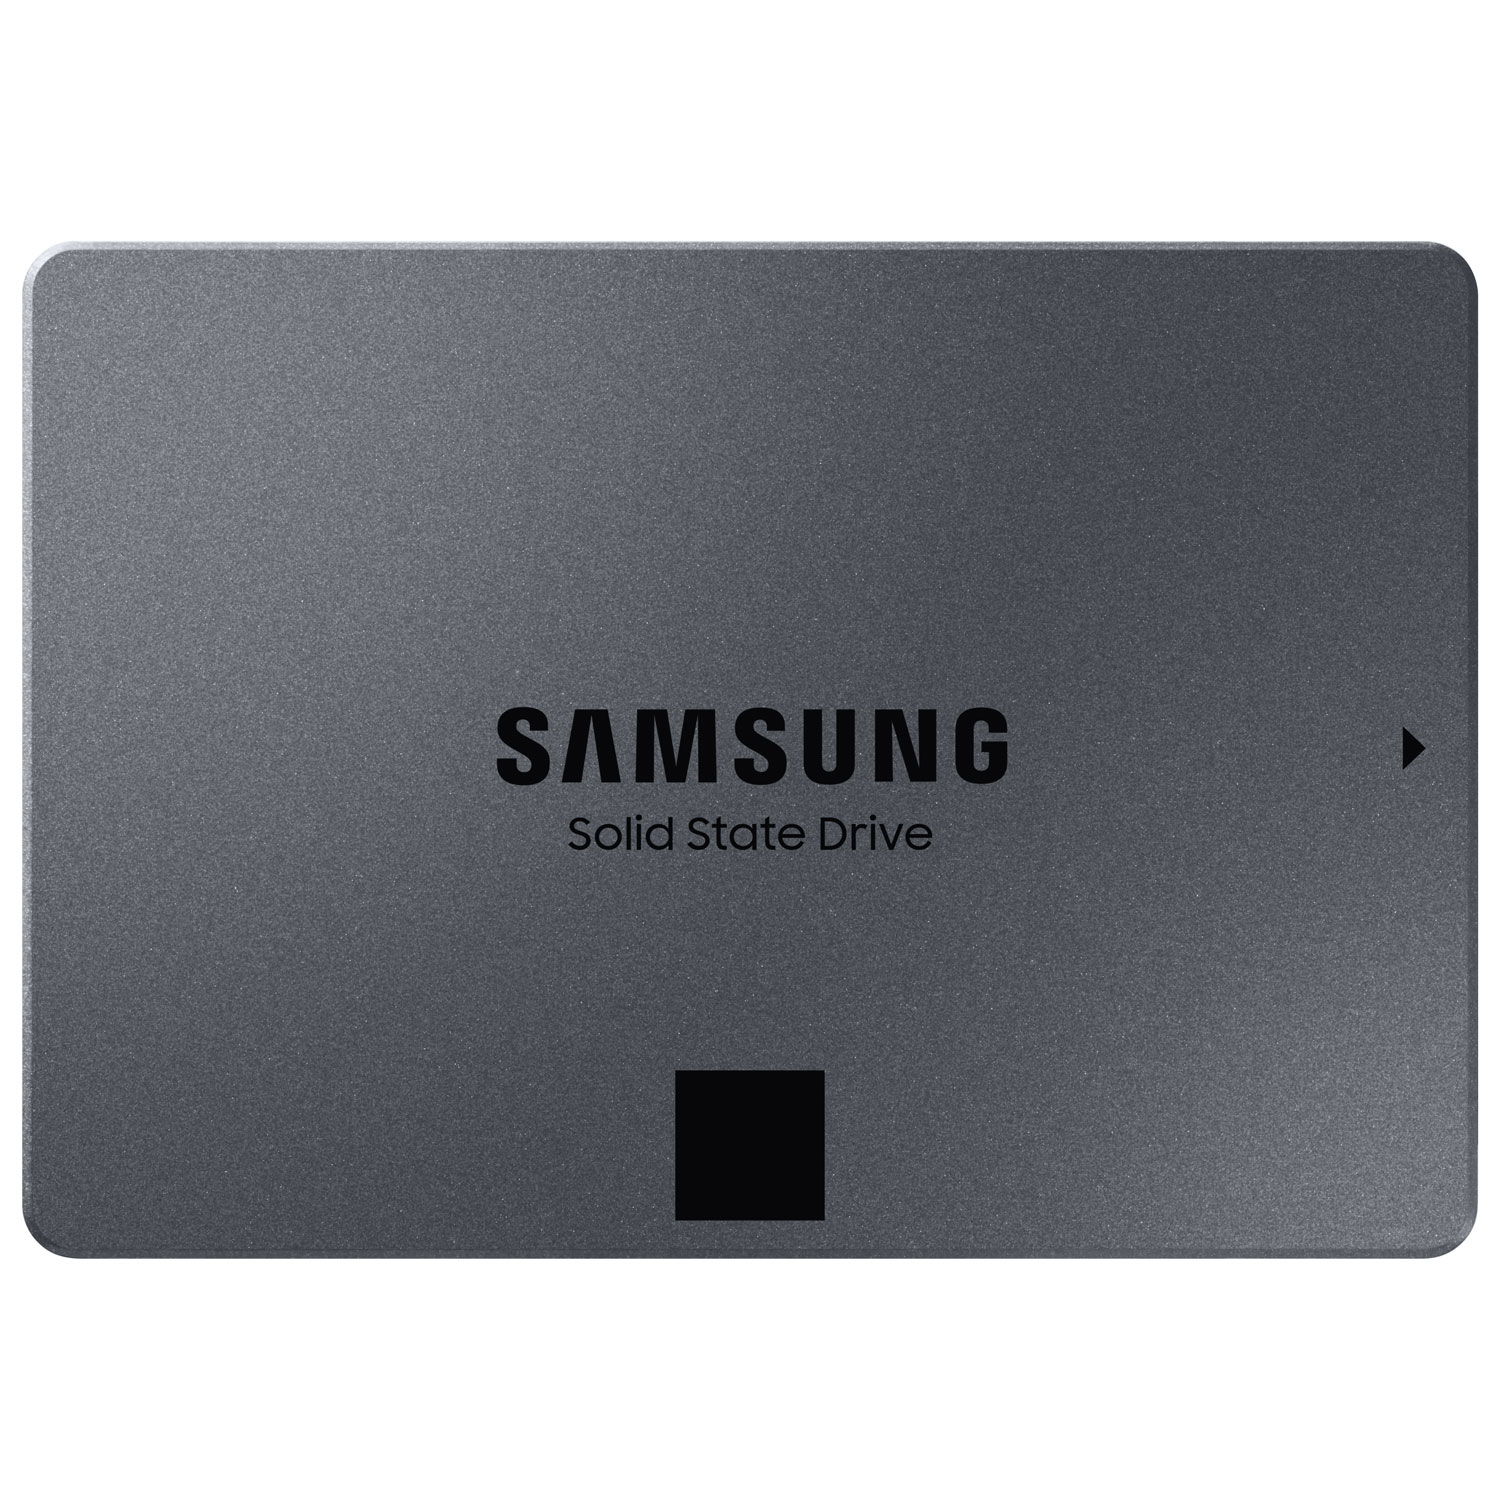 Samsung 870 QVO 4TB SATA III Internal Solid State Drive (MZ-77Q4T0B/AM)